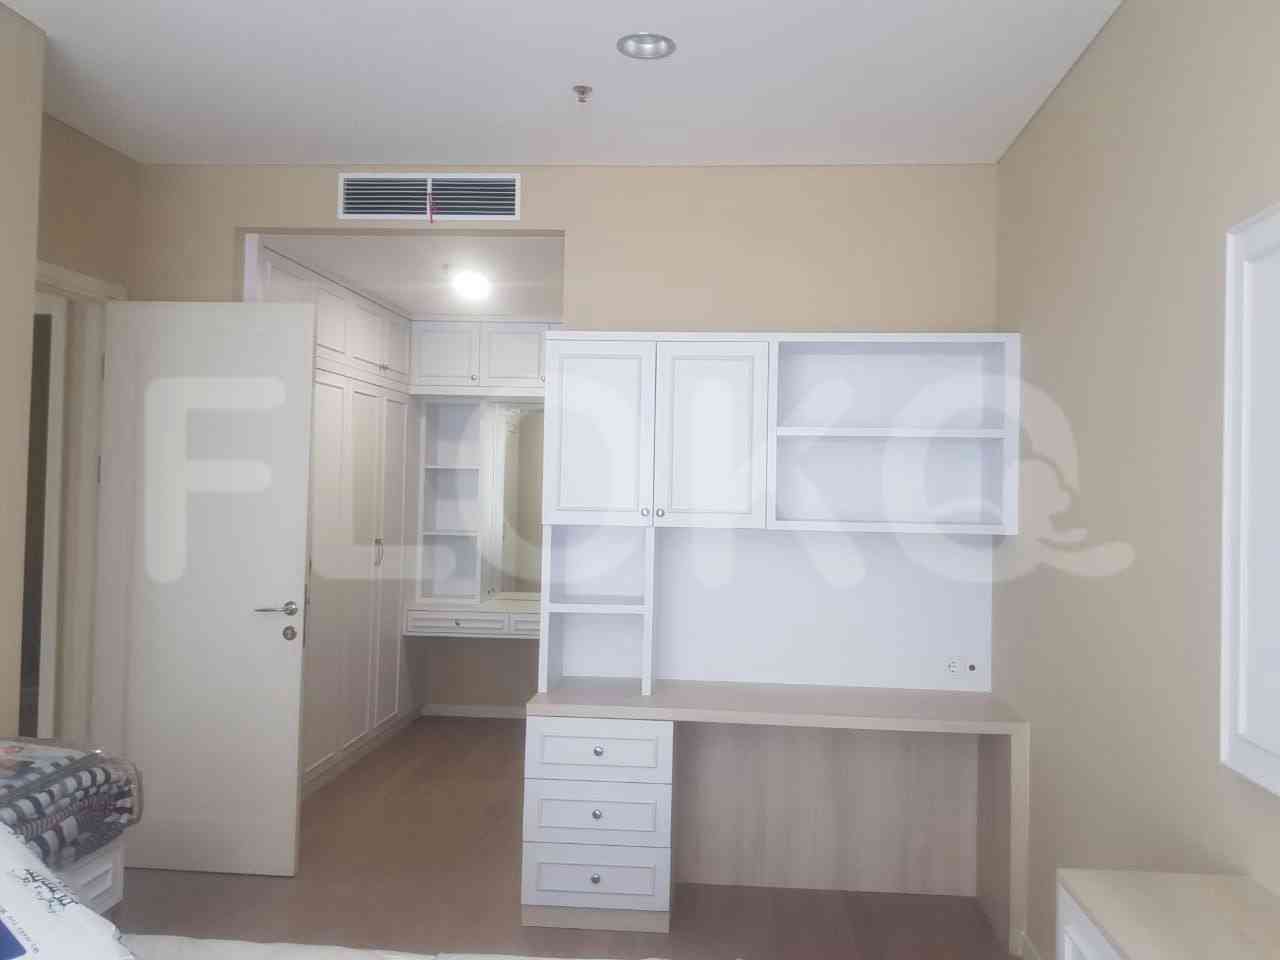 3 Bedroom on 19th Floor for Rent in Regatta - fplb9d 6